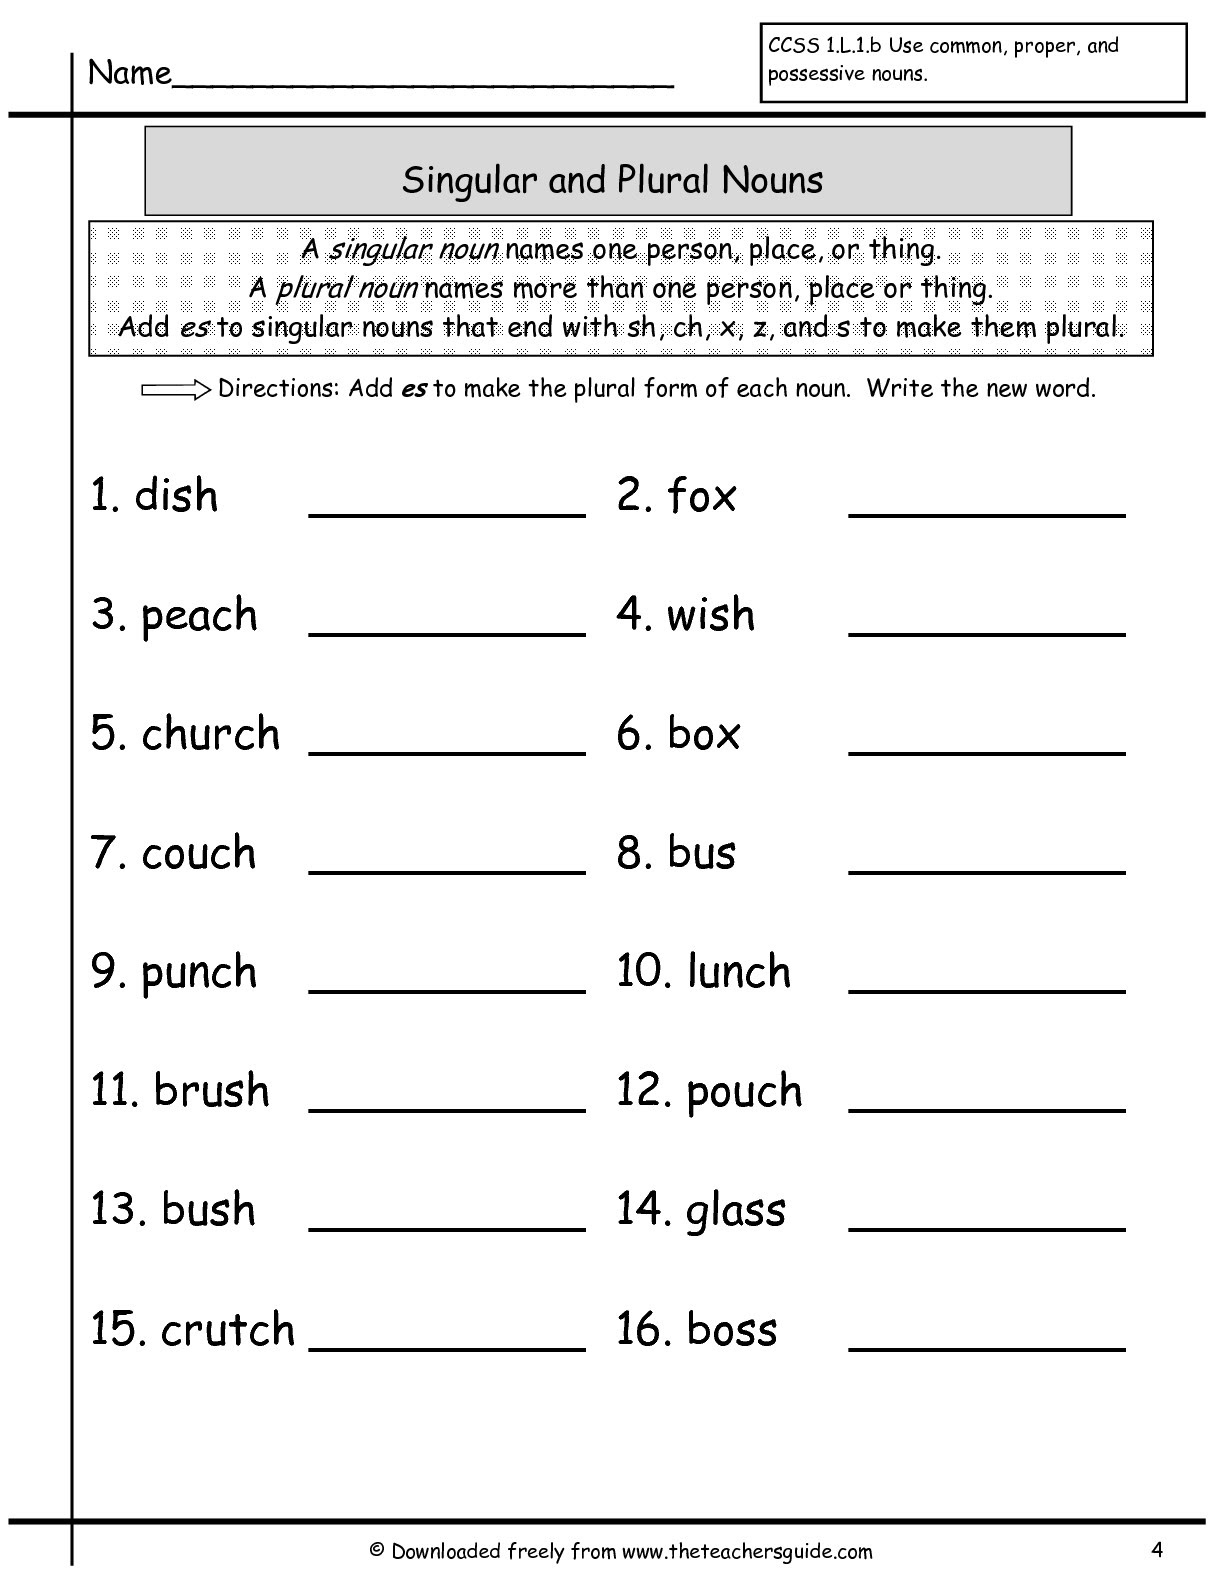 plural-nouns-worksheets-99worksheets